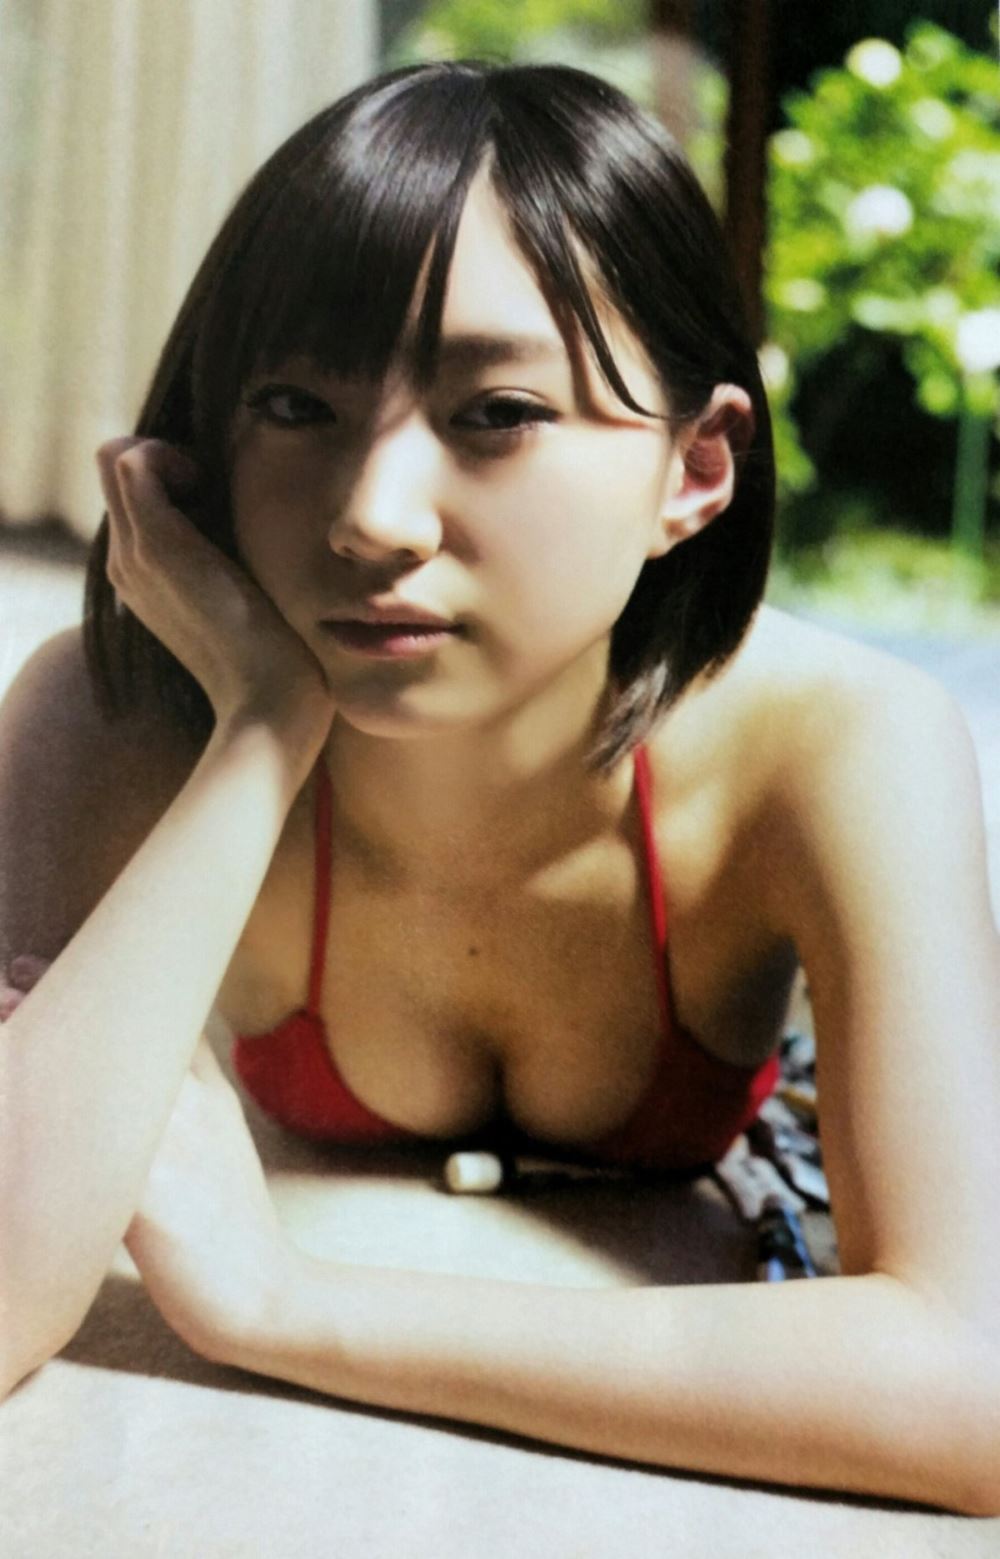 太田夢莉 1万年に1人 可愛い アイドル 水着 画像 51